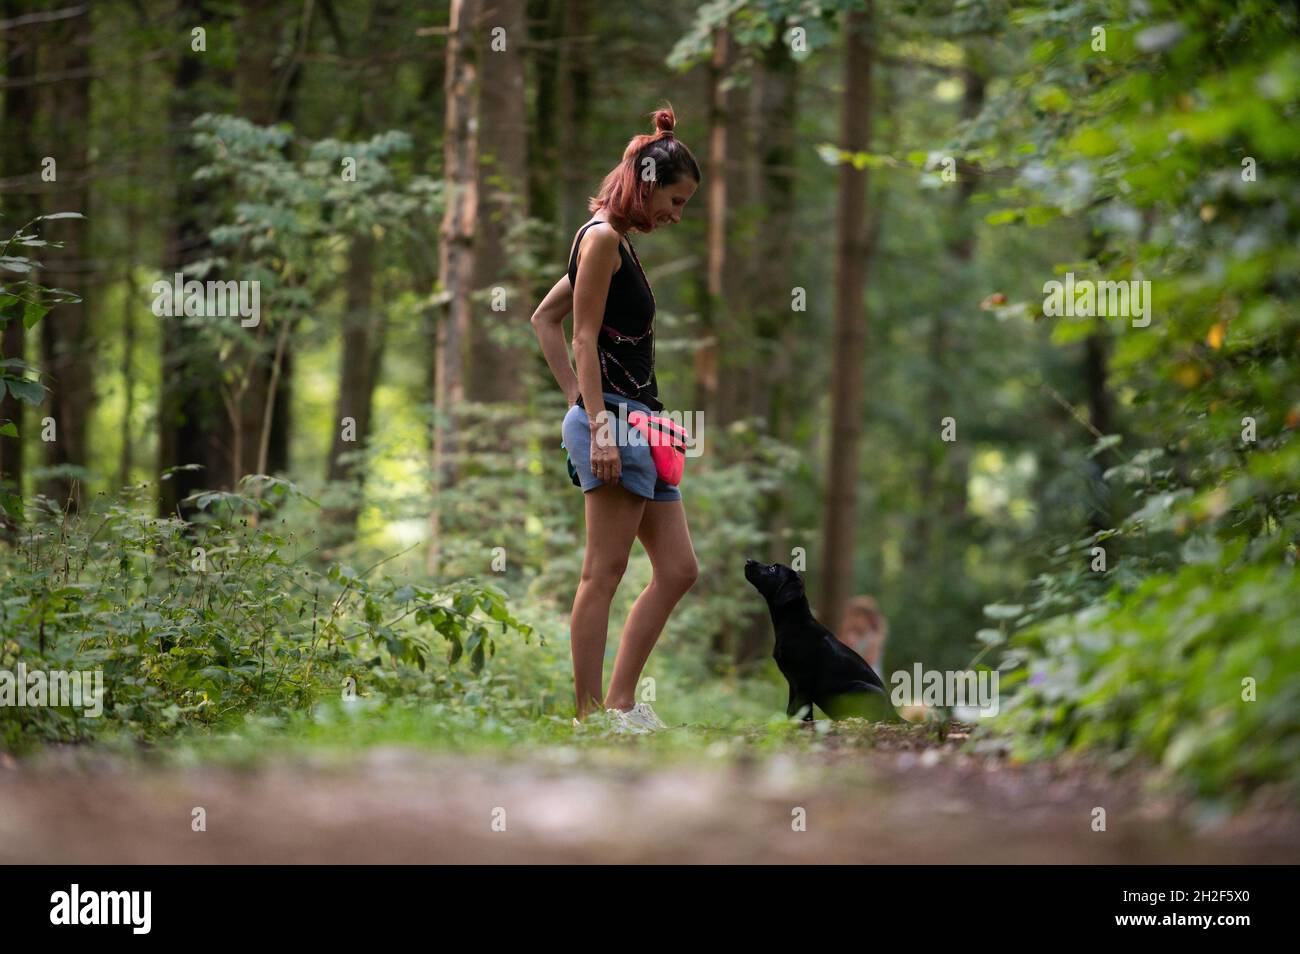 Die junge Obedience-Trainerin trainiert ihren schwarzen labrador-Welpen, der vor ihr sitzt und sie aufmerksam anschaut. Stockfoto